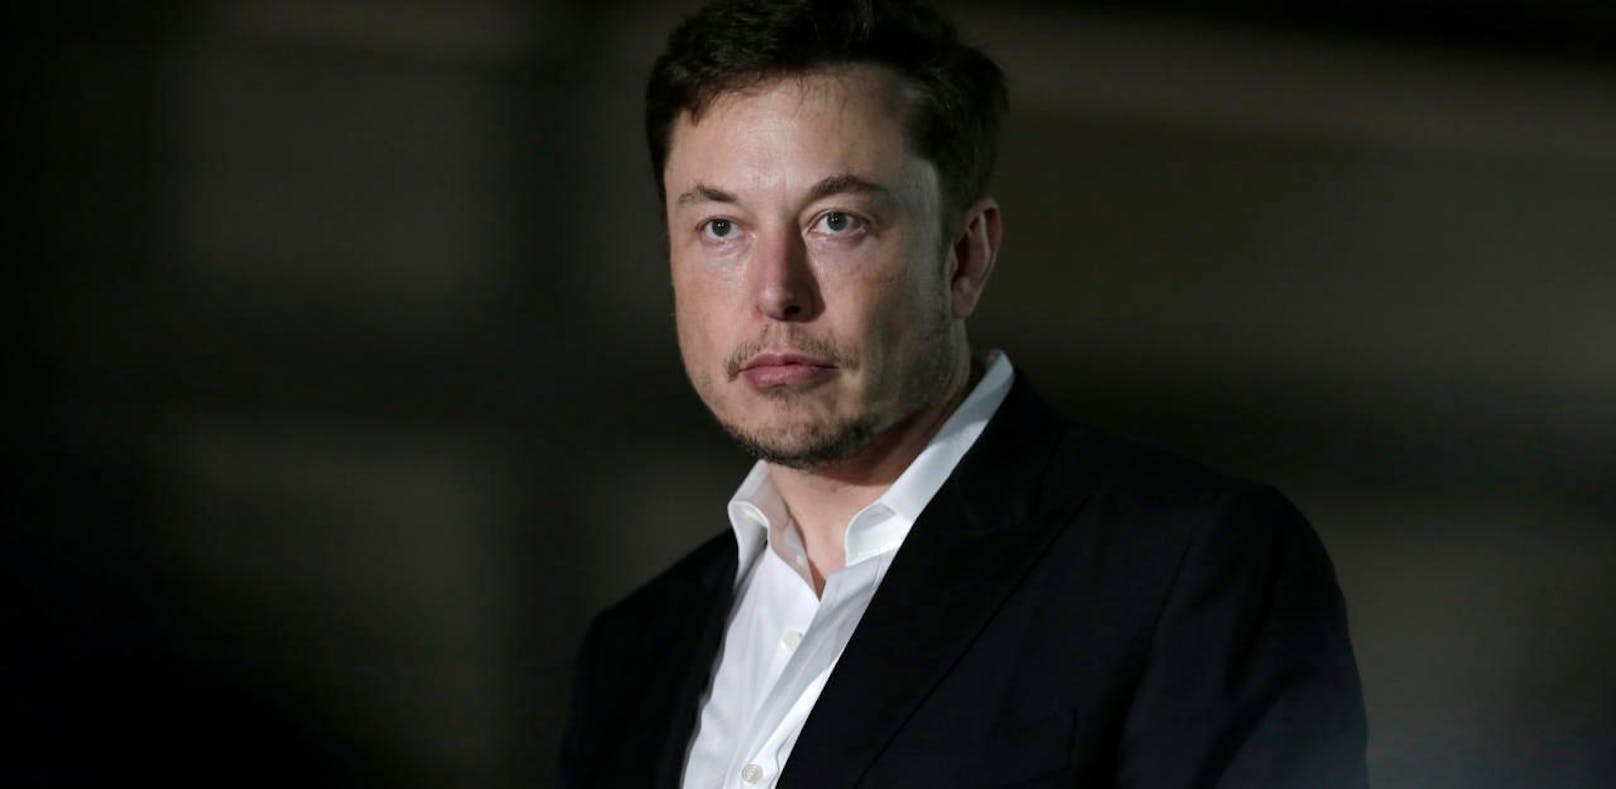 Börsenaufsicht reicht Klage gegen Elon Musk ein